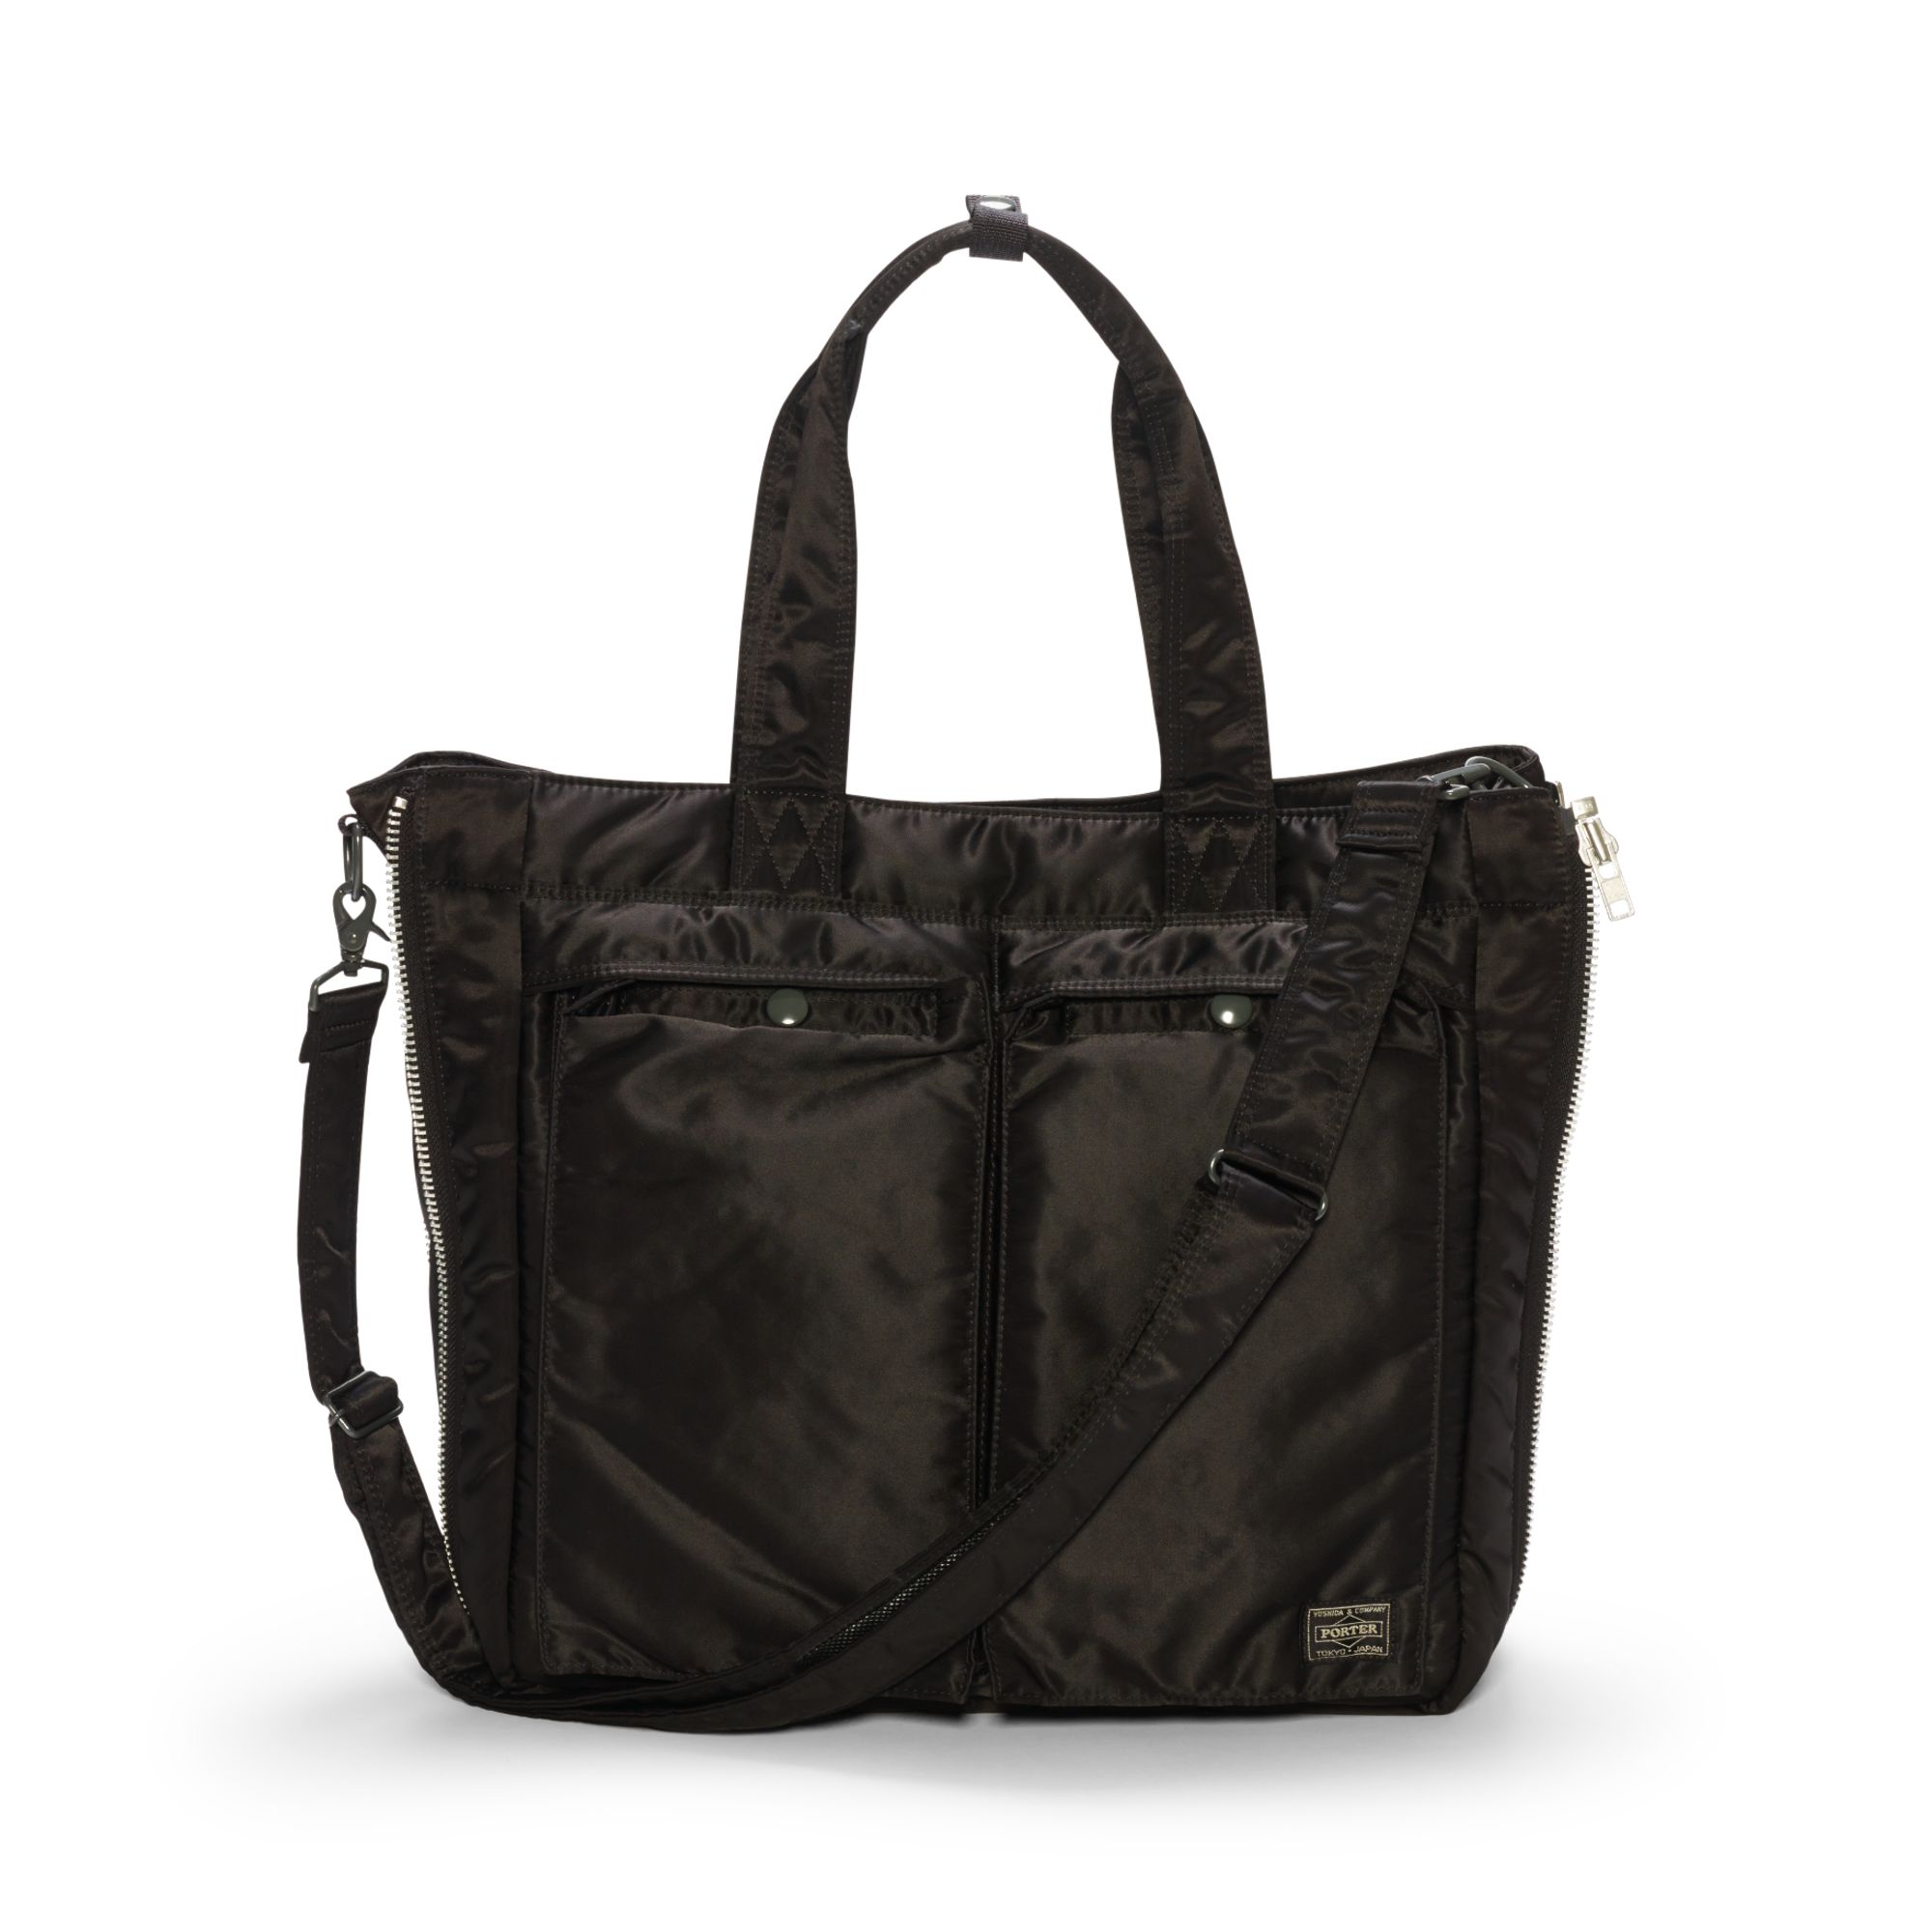 Lyst - Porter Pocket Tote Bag in Black for Men